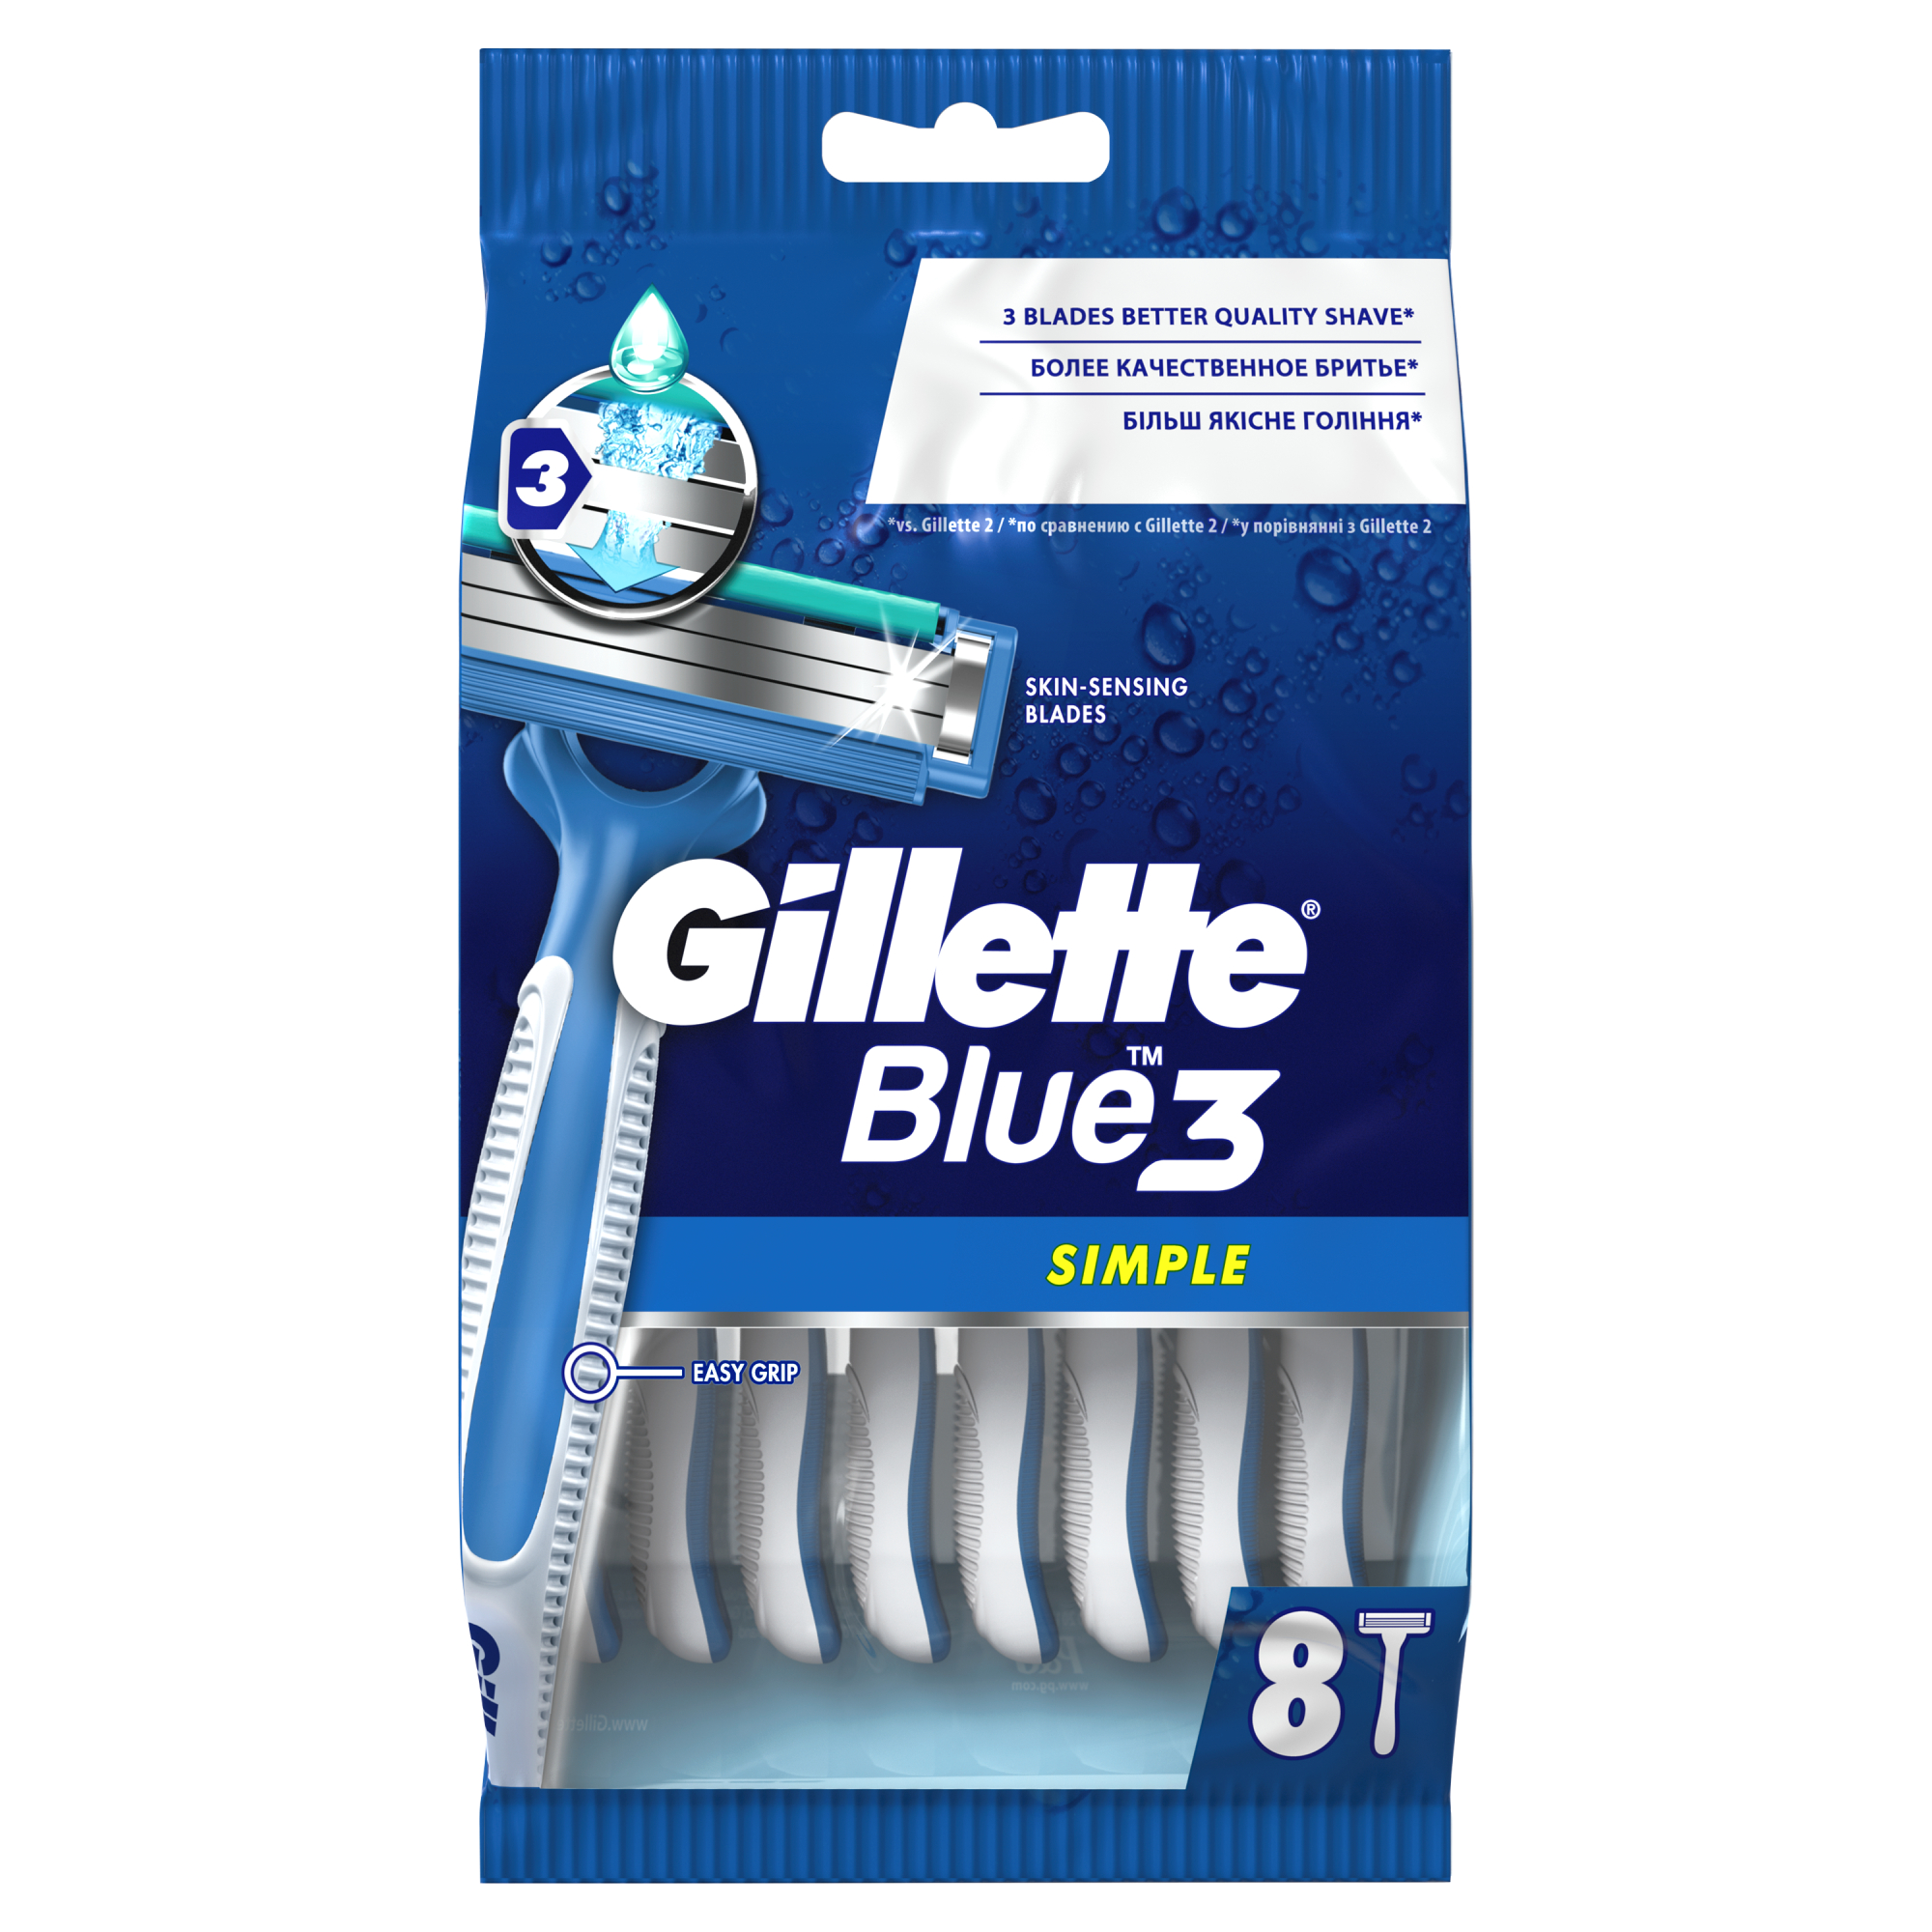 Одноразовые мужские бритвы Gillette Blue3 Simple, с 3 лезвиями, 8, фиксированная головка мужская бритва gillette fusion5 2 кассеты с 5 лезвиями с уменьшающими трение лезвиями с точным триммером